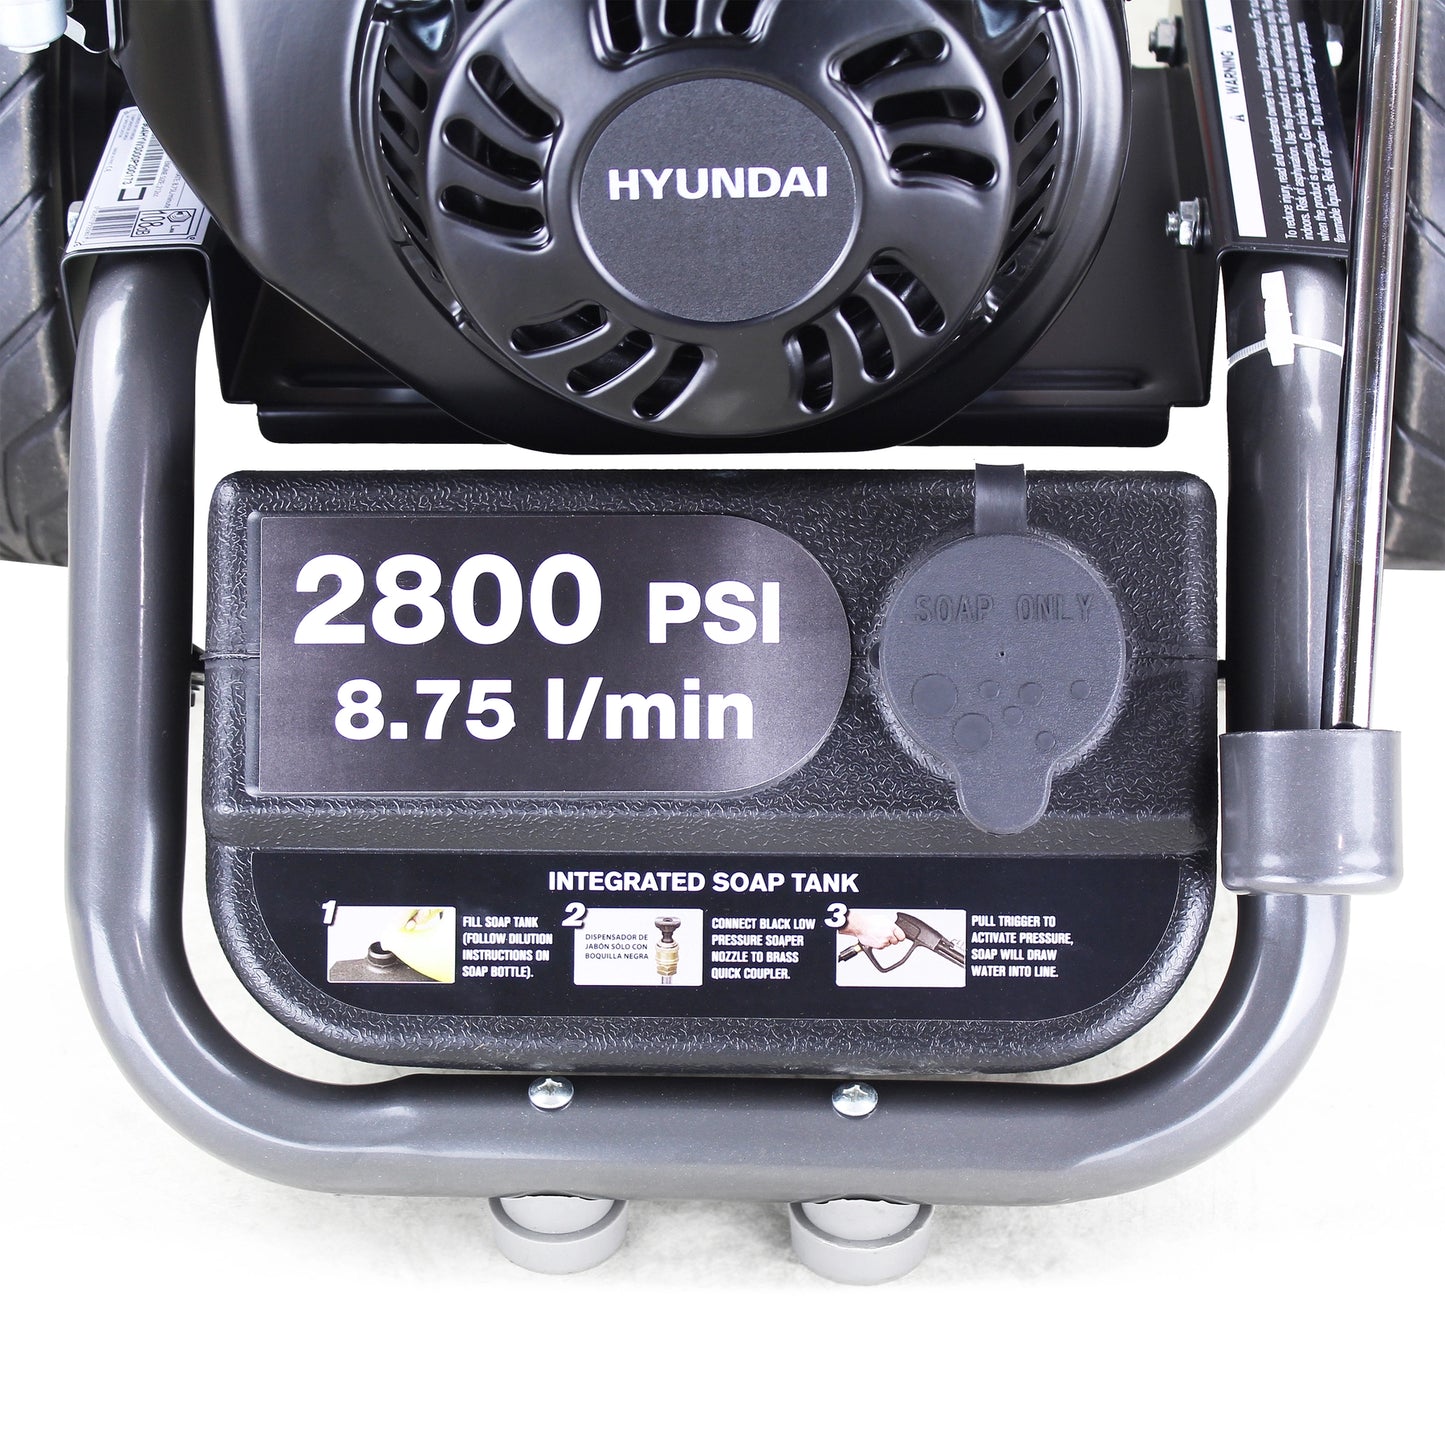 Hyundai HYW3000P2 Petrol Pressure Washer